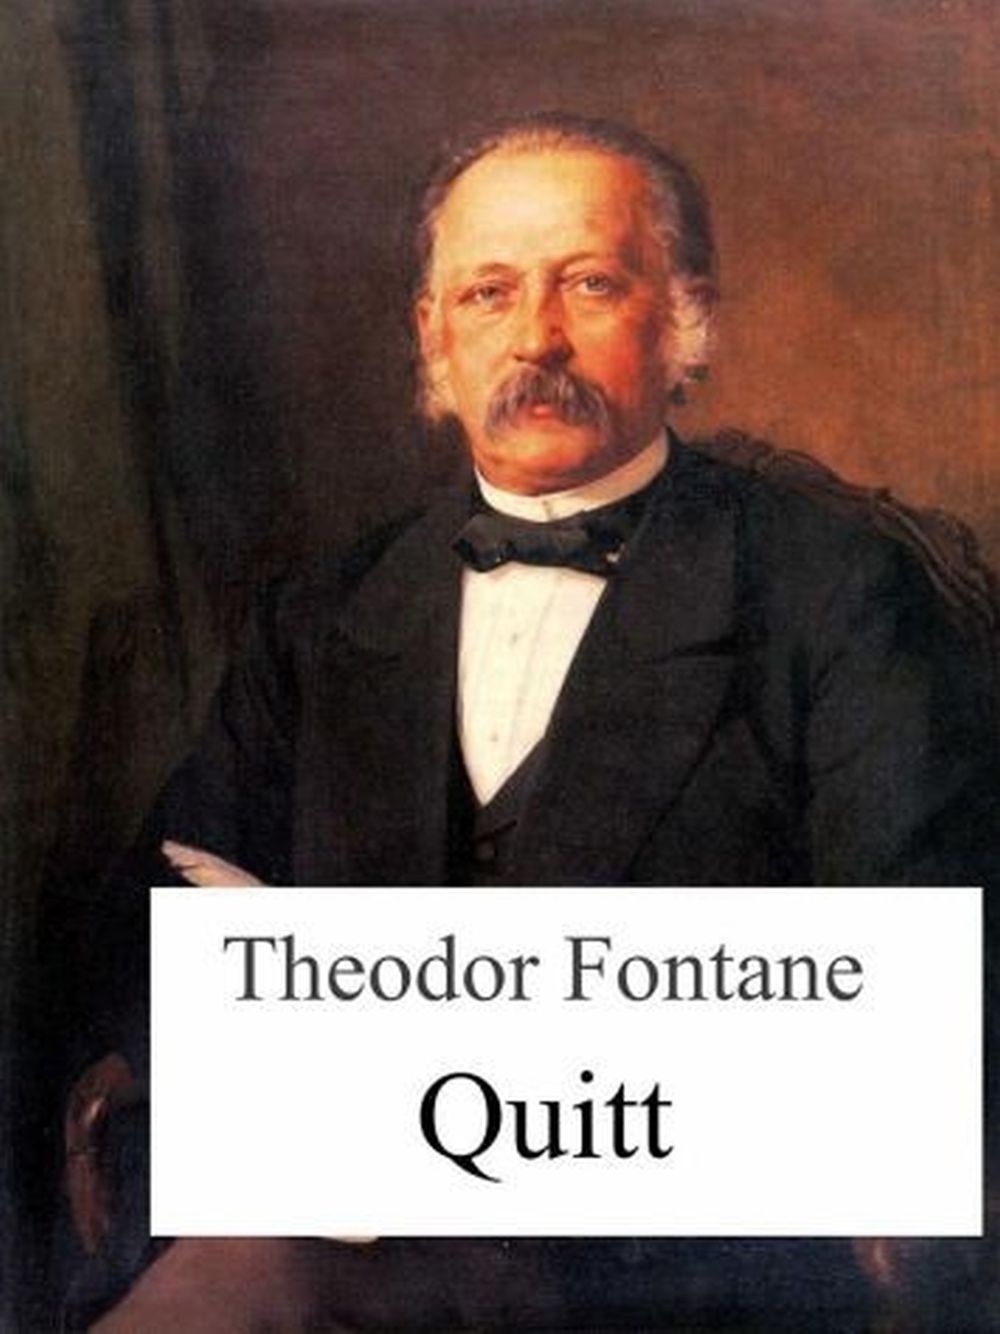 Fot2. Dzięki powieści „Quitt” („Kwita” napisanej w latach 1885-1889) przez Theodora Fontane tragedia ta trafiła do literatury światowej